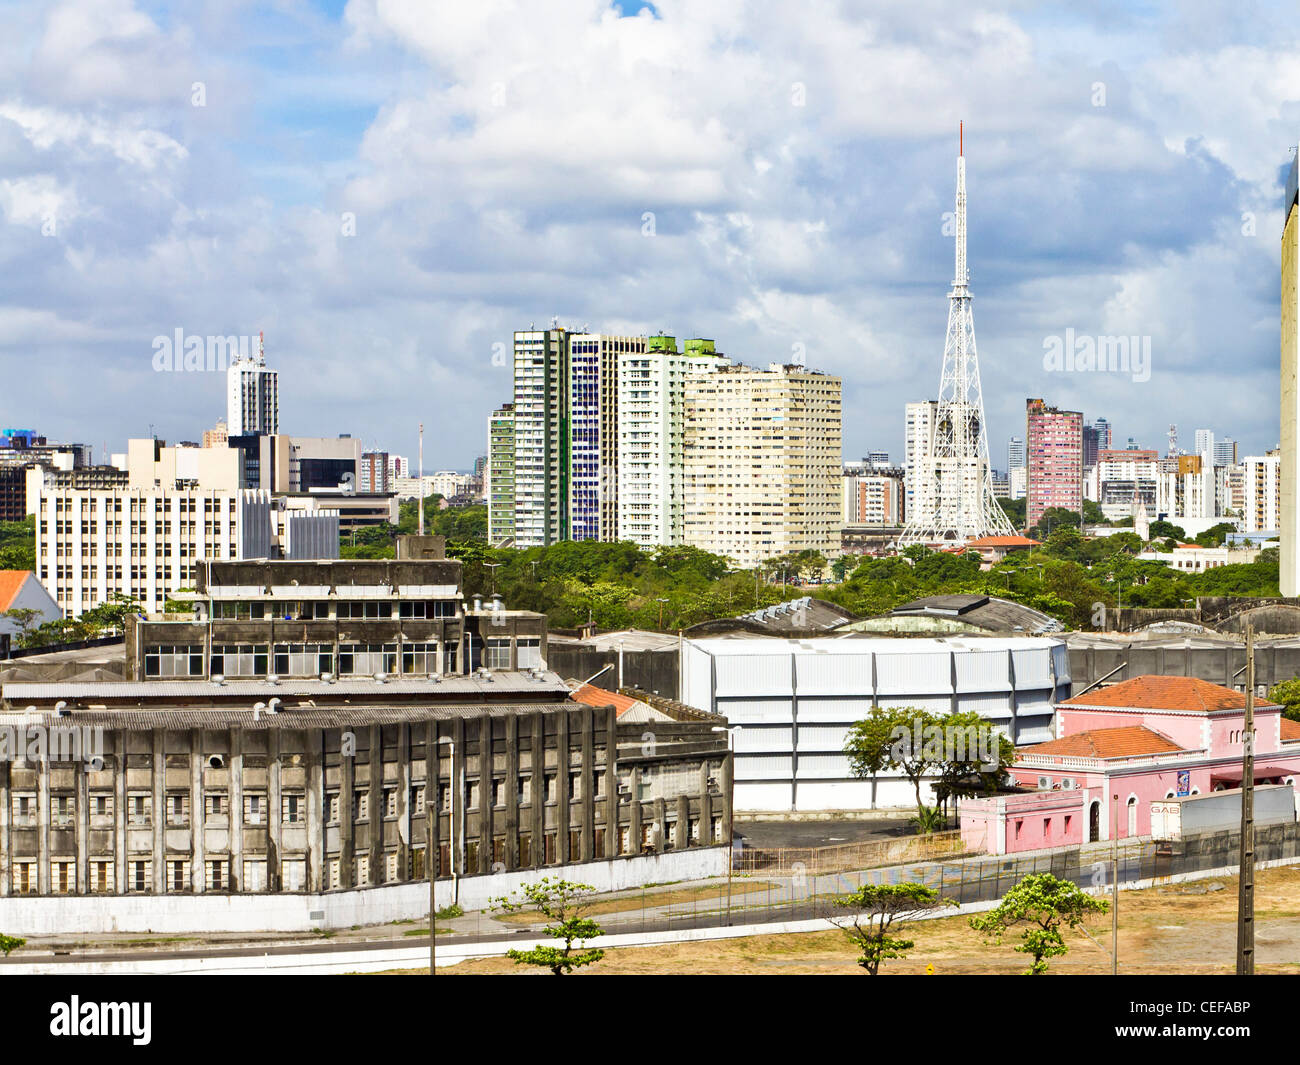 Recife Brazil Antigo city scape cityscape Stock Photo